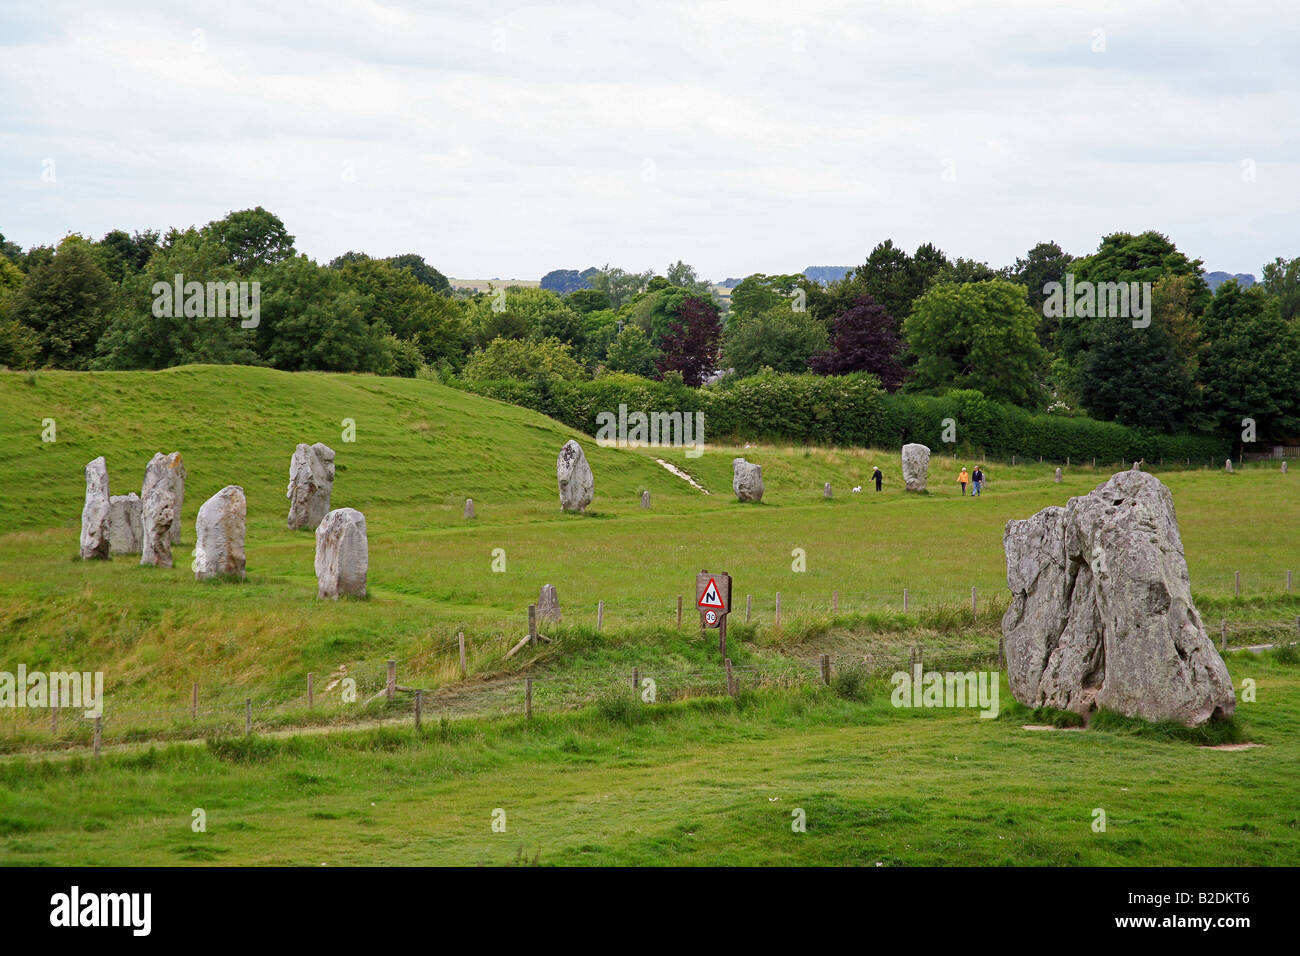 El monolito prehistórico círculo en Avebury, Wiltshire, UK - un sitio del Patrimonio Mundial Foto de stock